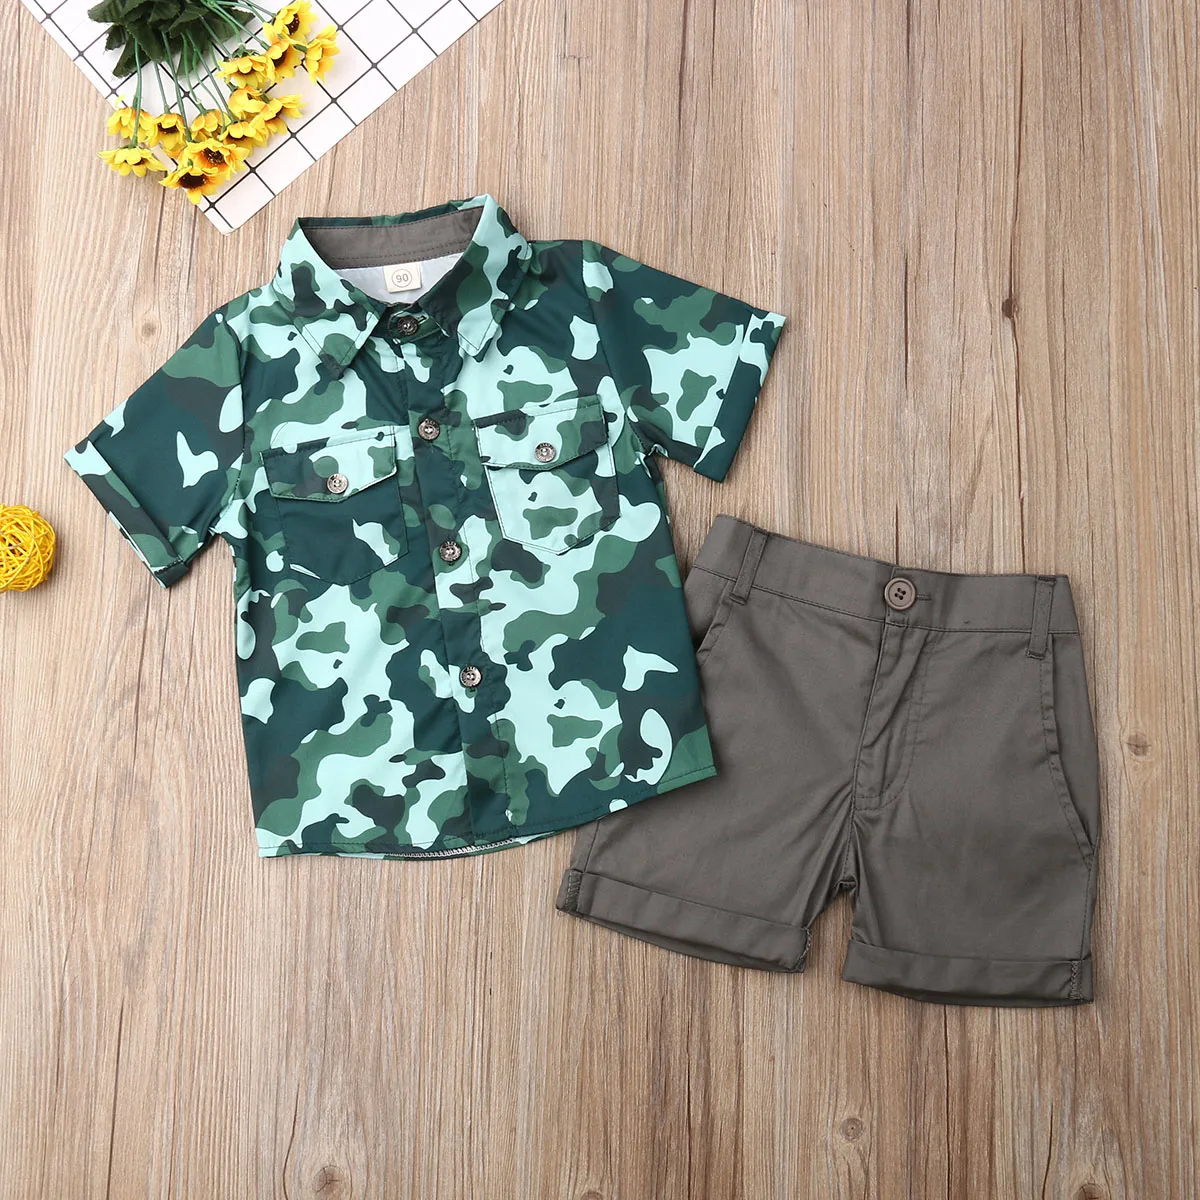 Pudcoco/Летняя одежда для маленьких мальчиков Лидер продаж, камуфляжные рубашки топы с принтом, Короткие штаны комплект из 2 предметов, летняя одежда